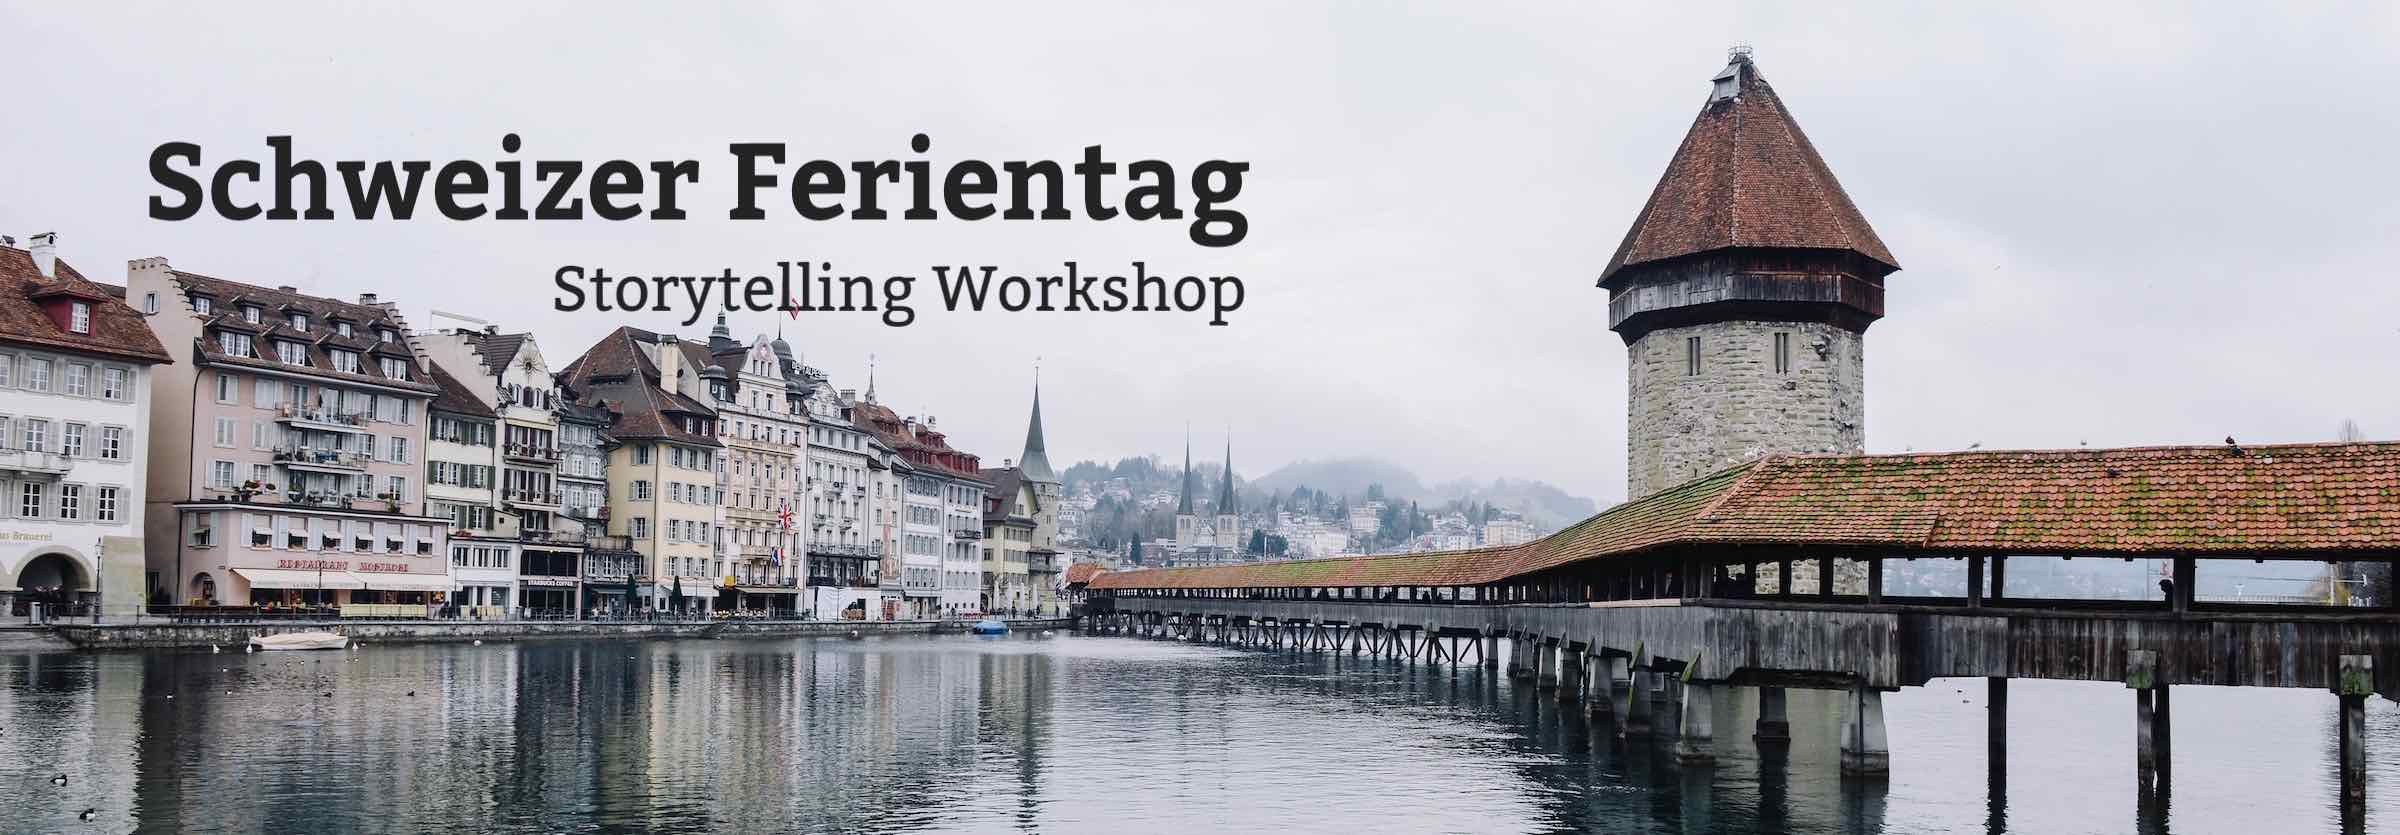 Schweizer Ferientag, Storytelling Workshop